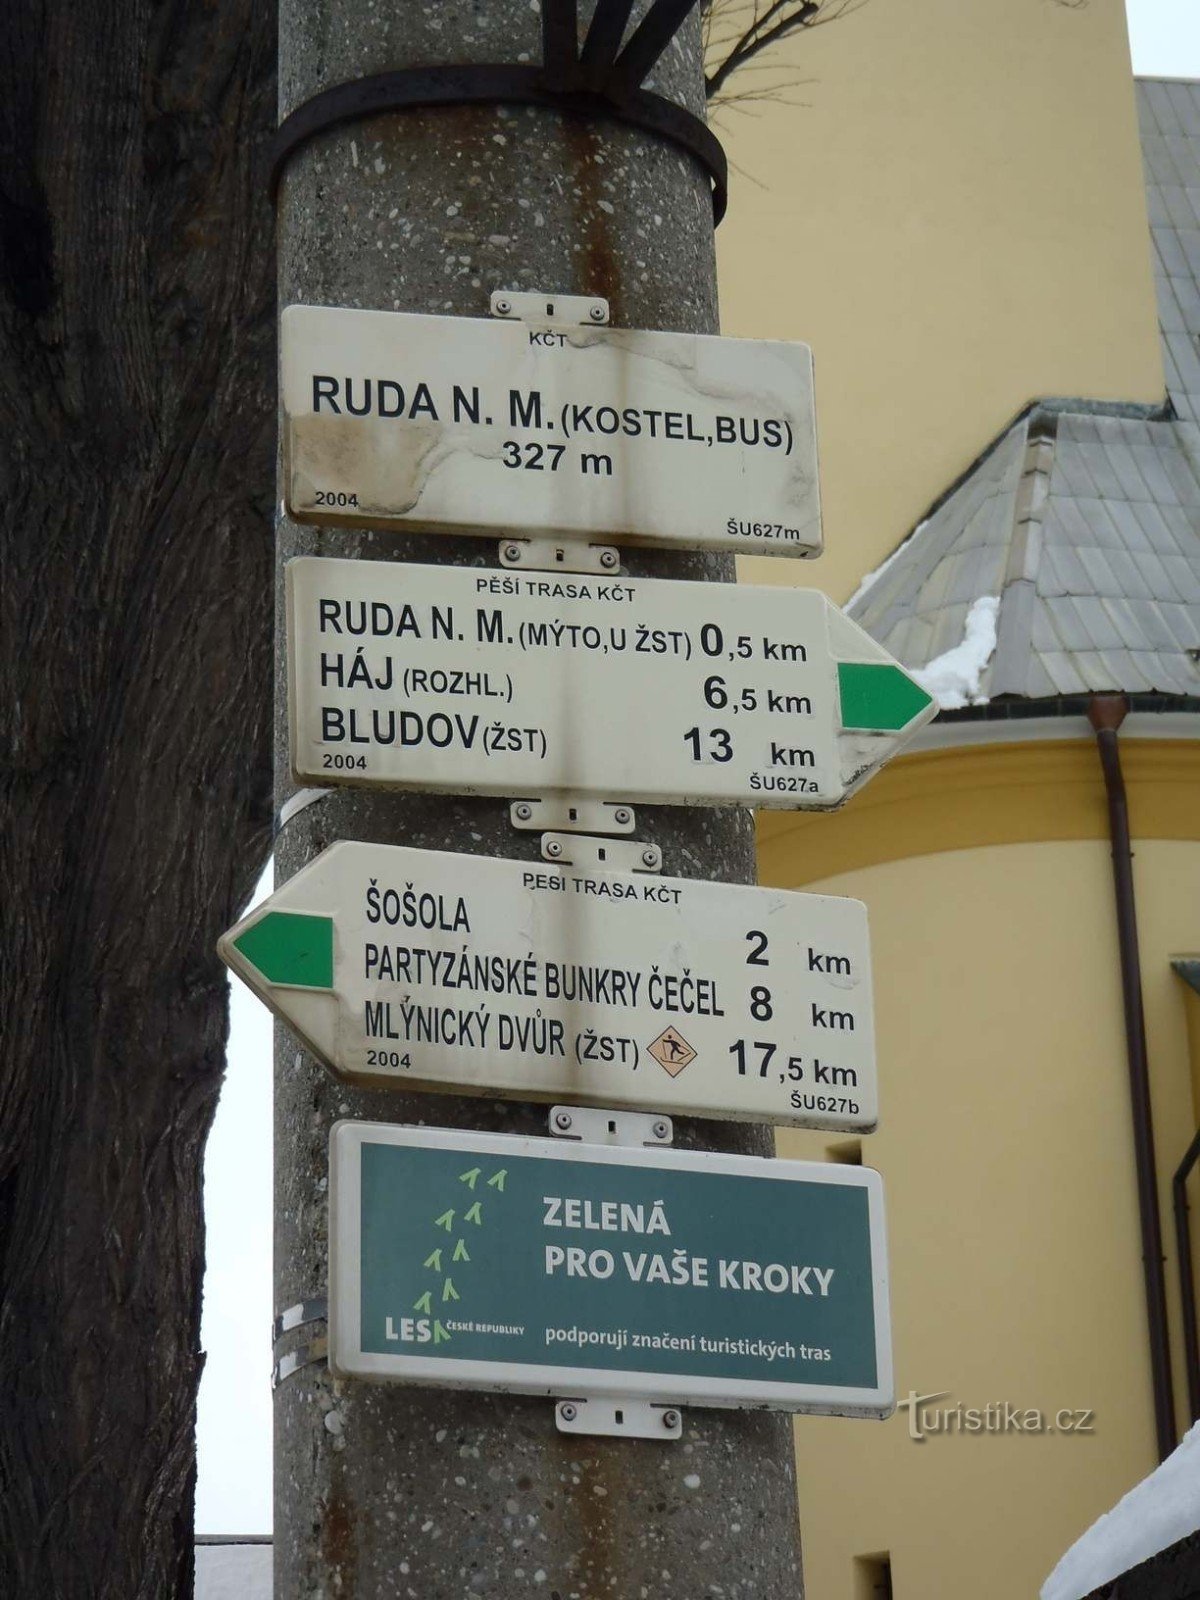 Putokaz crkve Ruda nad Moravou - 18.2.2012. veljače XNUMX